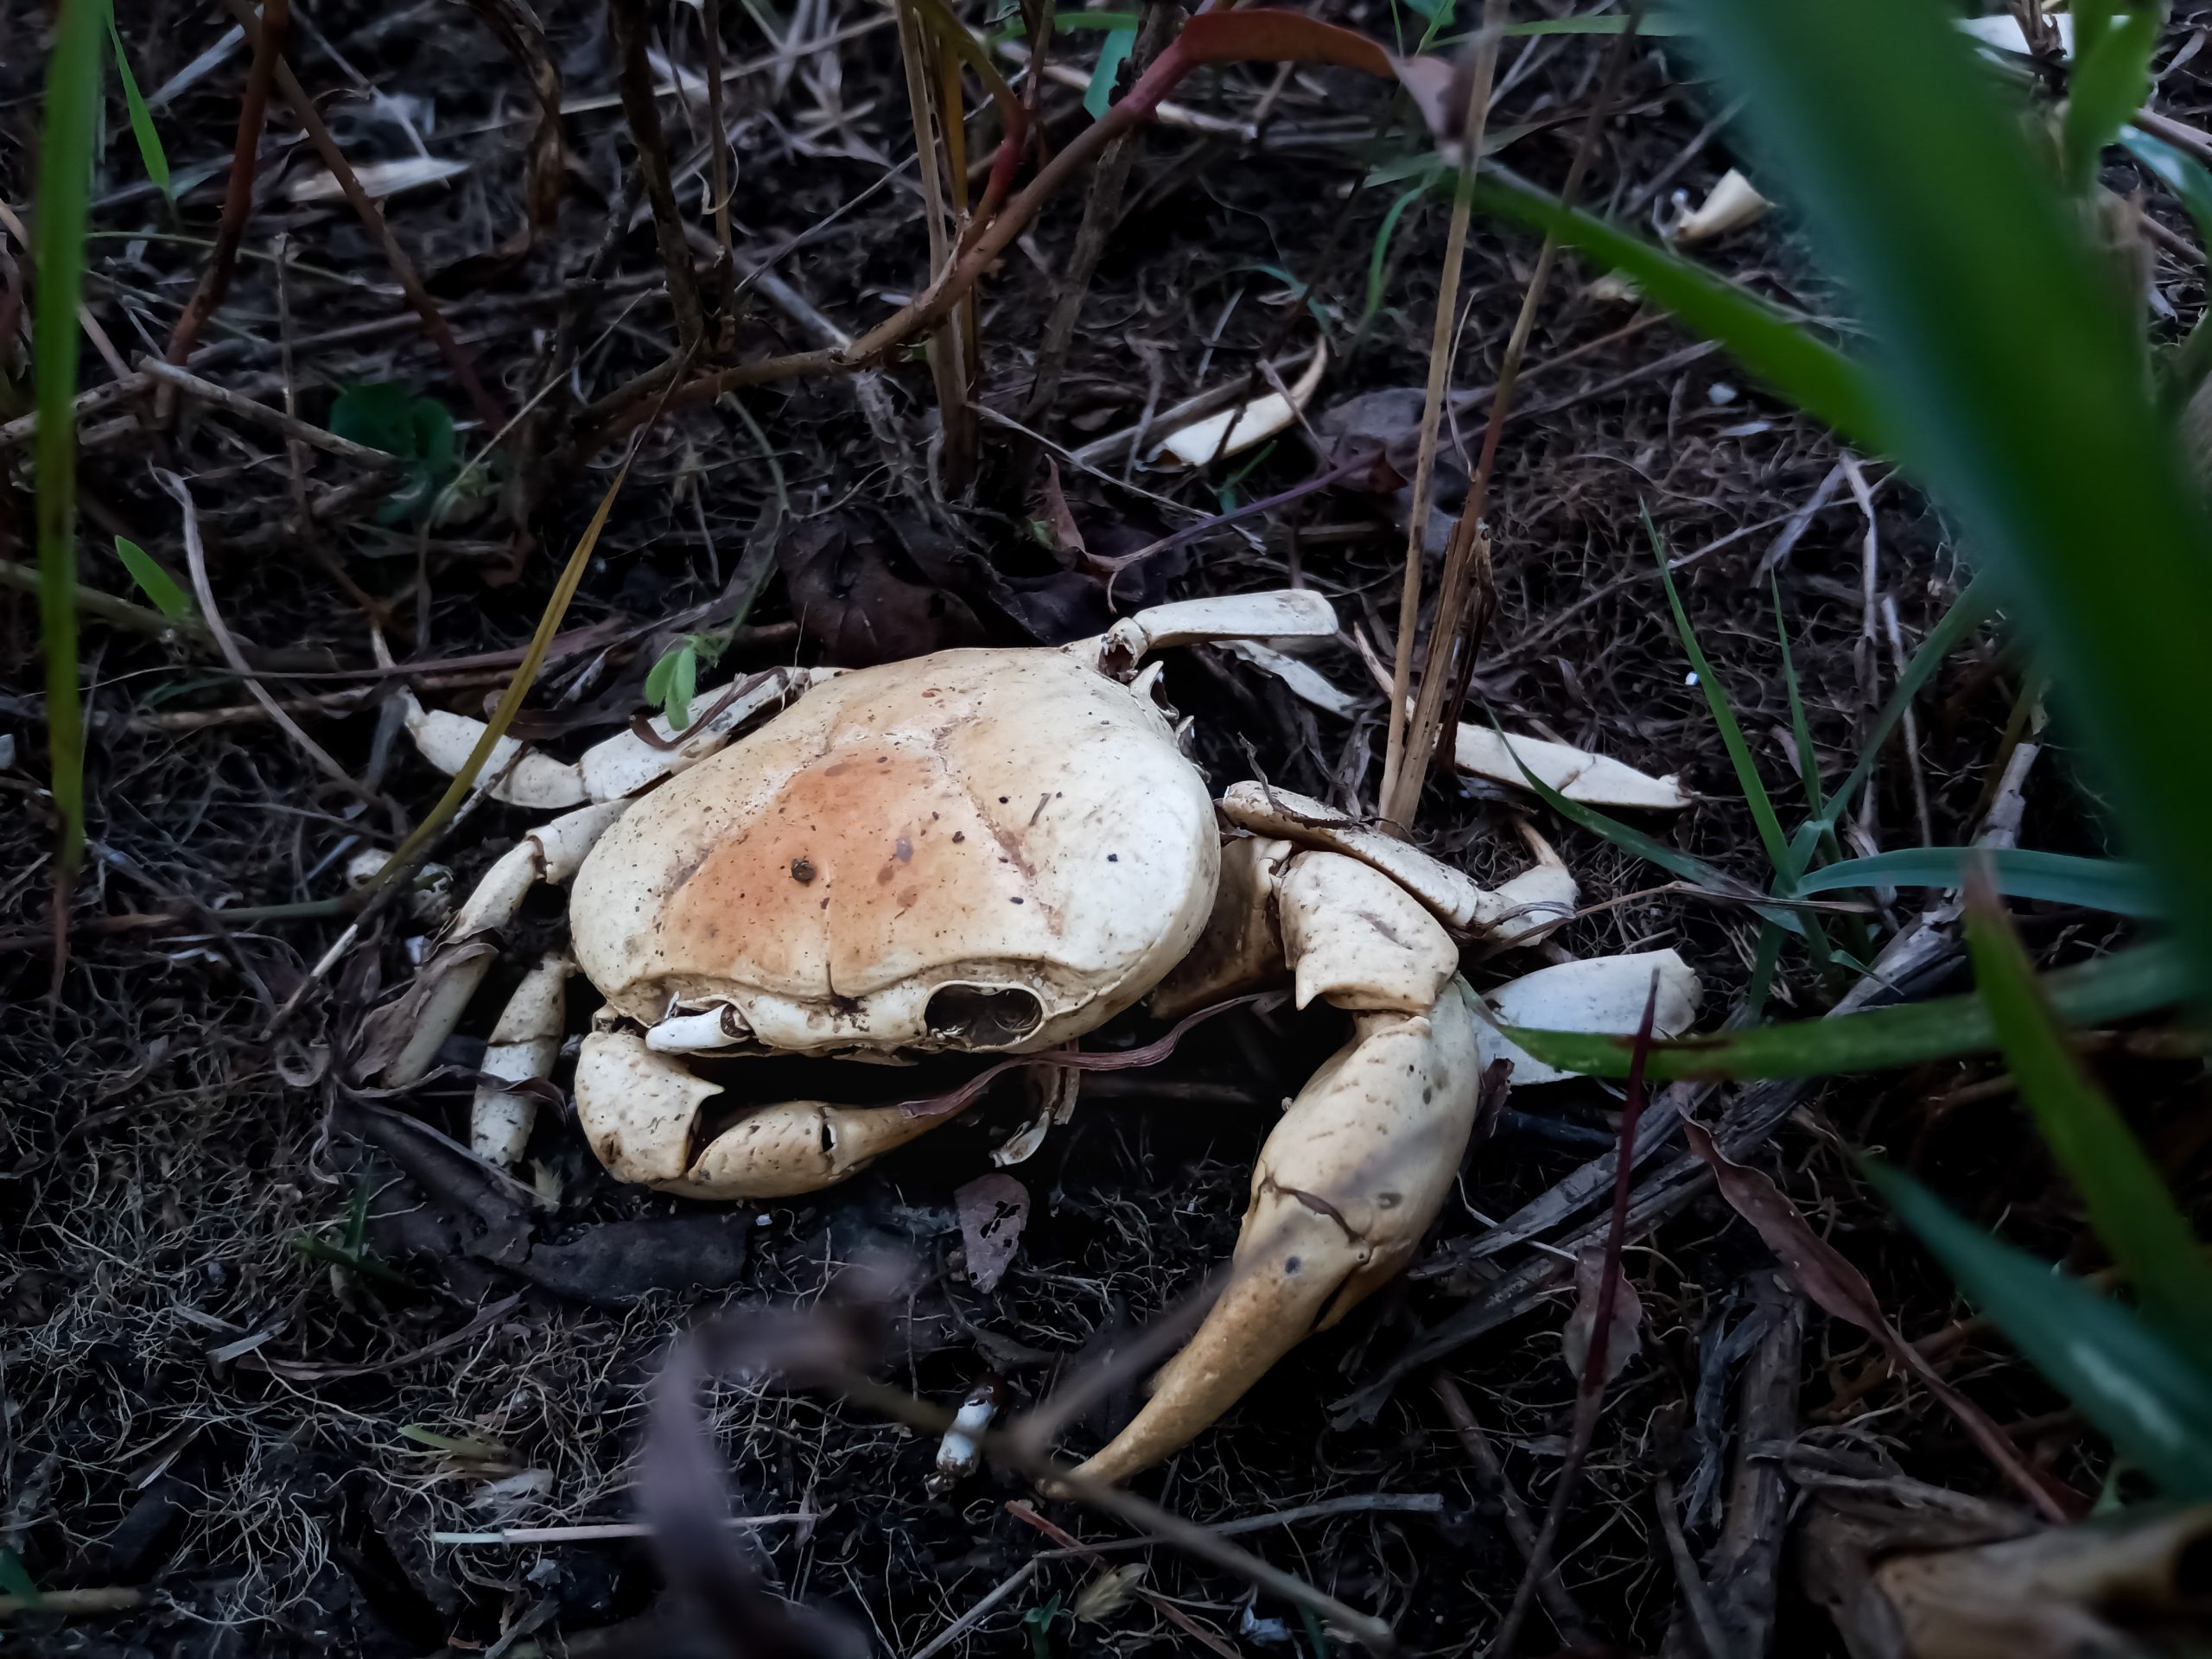 A dead crab